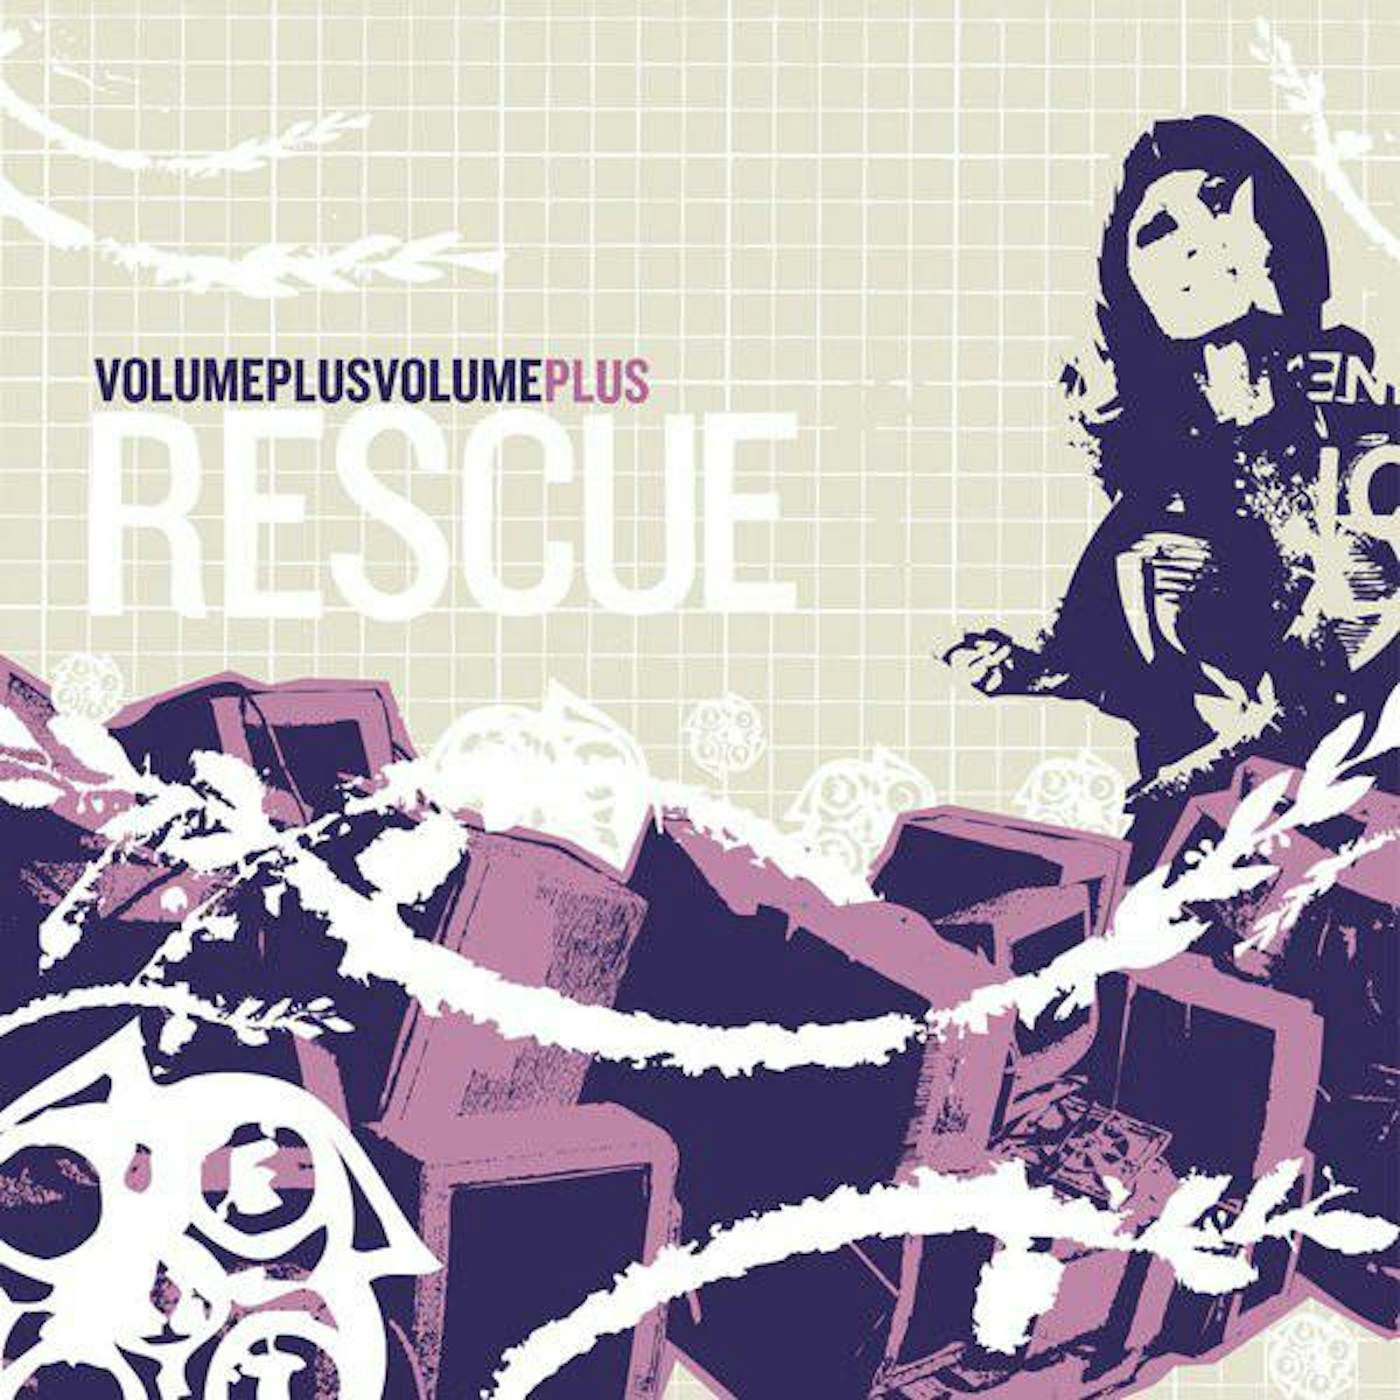 Rescue – Volume Plus Volume Plus 2xCD